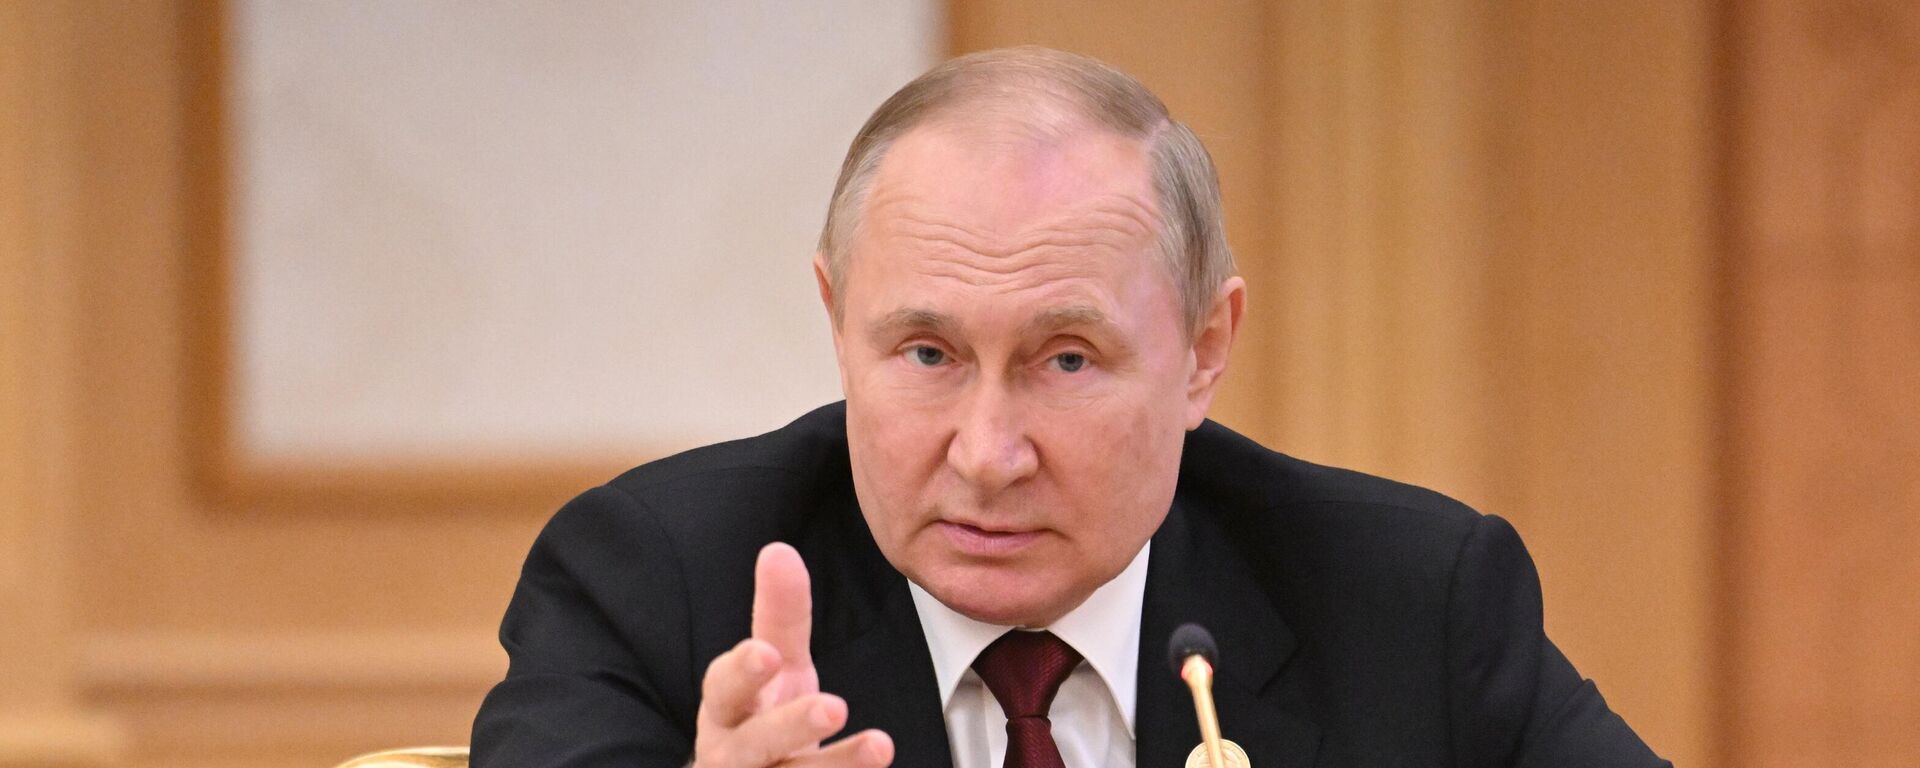 Vladímir Putin, el presidente ruso al participa en la VI Cumbre del mar Caspio - Sputnik Mundo, 1920, 04.09.2022